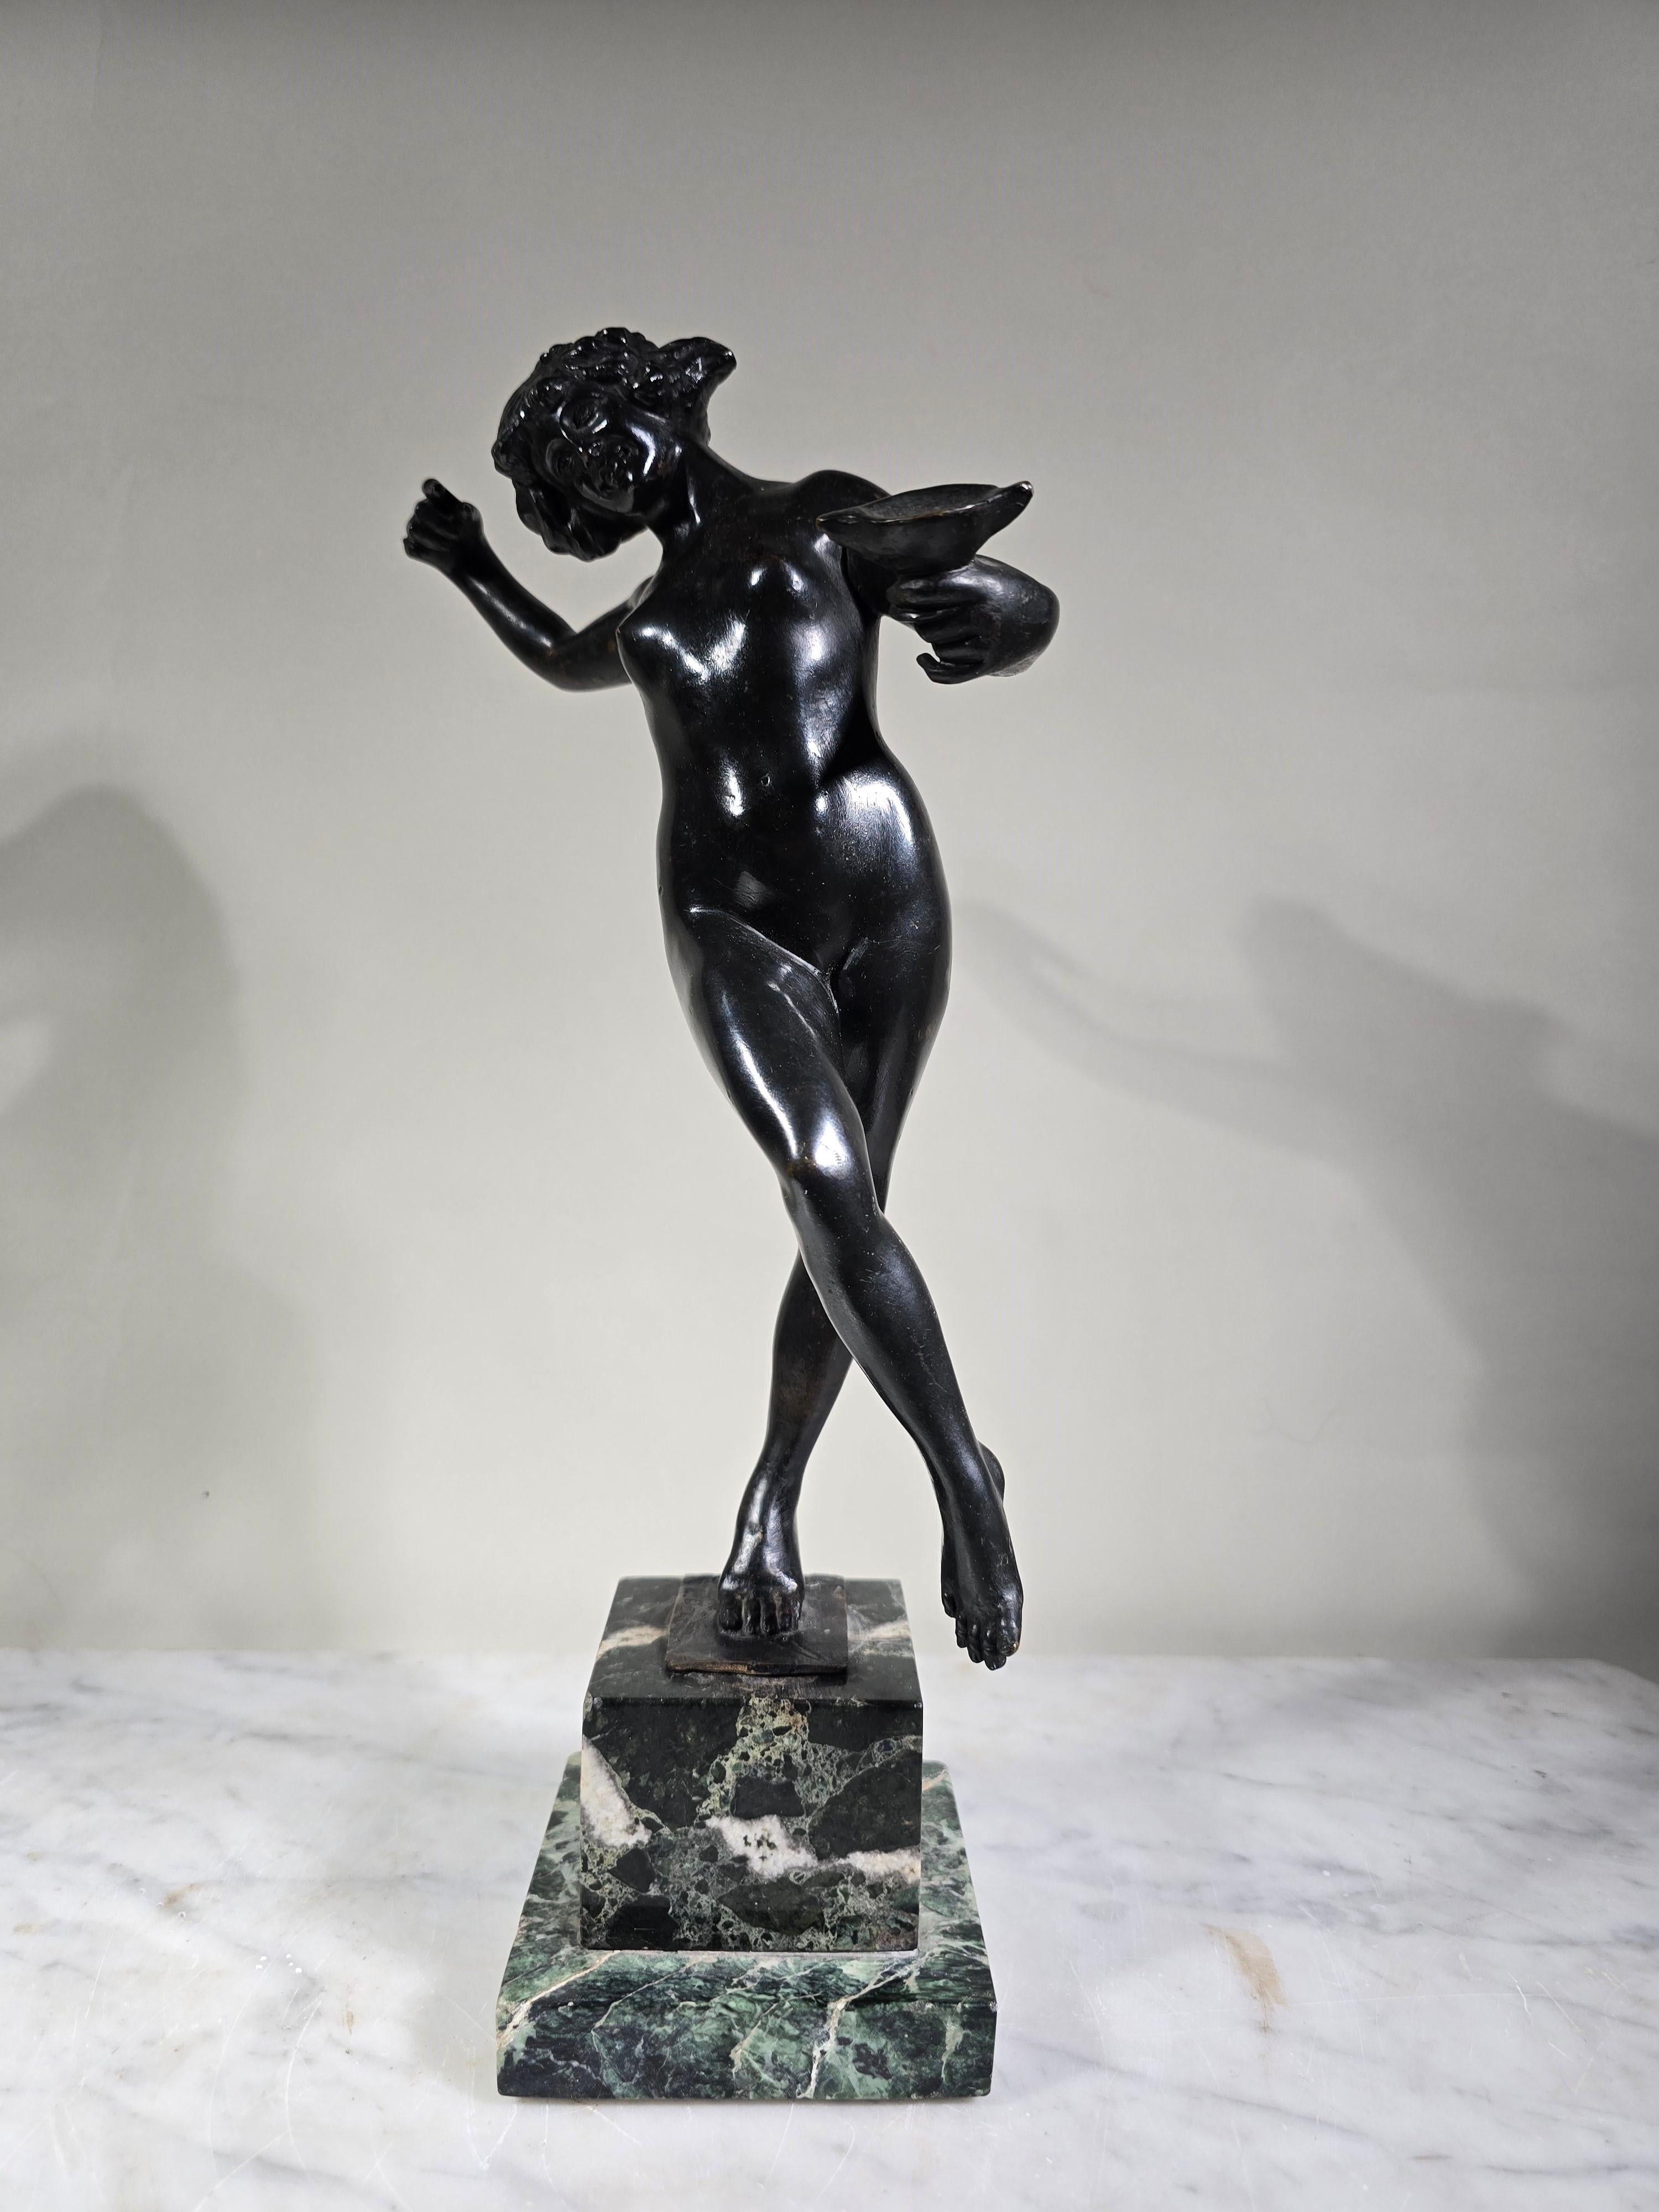 Diese elegante Bronzeskulptur fängt die Schönheit und Anmut des antiken Griechenlands ein und stellt eine Jungfrau in ihrer ganzen Pracht dar. Dieses zeitlose Kunstwerk wurde von dem berühmten italienischen Bildhauer Luigi de Luca (1857-1953)